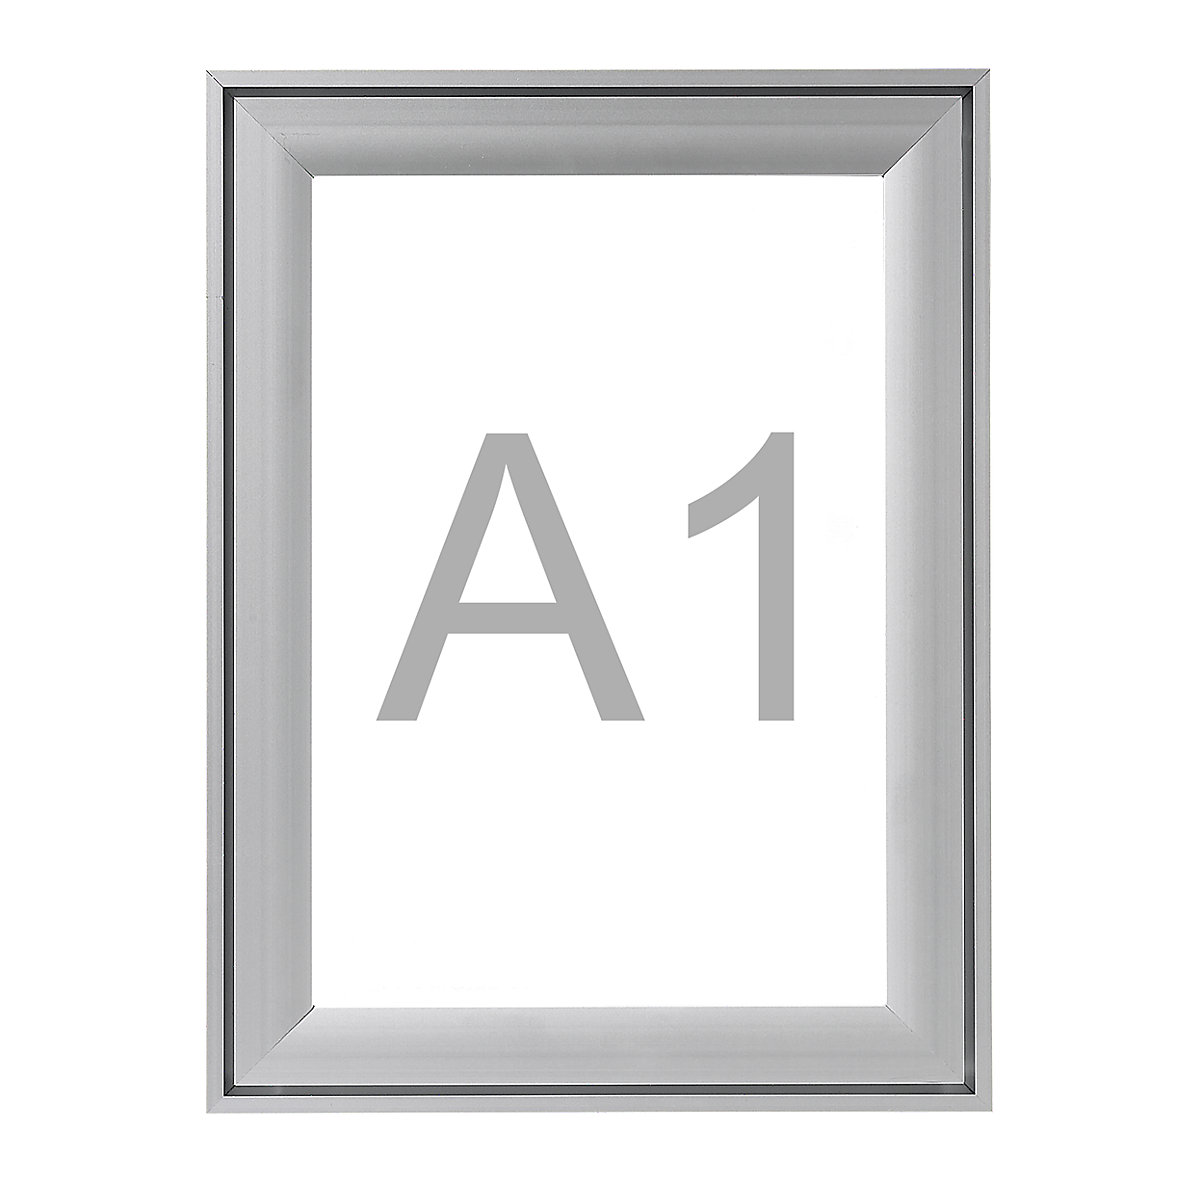 Pregibni okvir Premium, aluminijast profil, DE 2 kosa, za DIN A1, VxŠ 895 x 648 mm-7